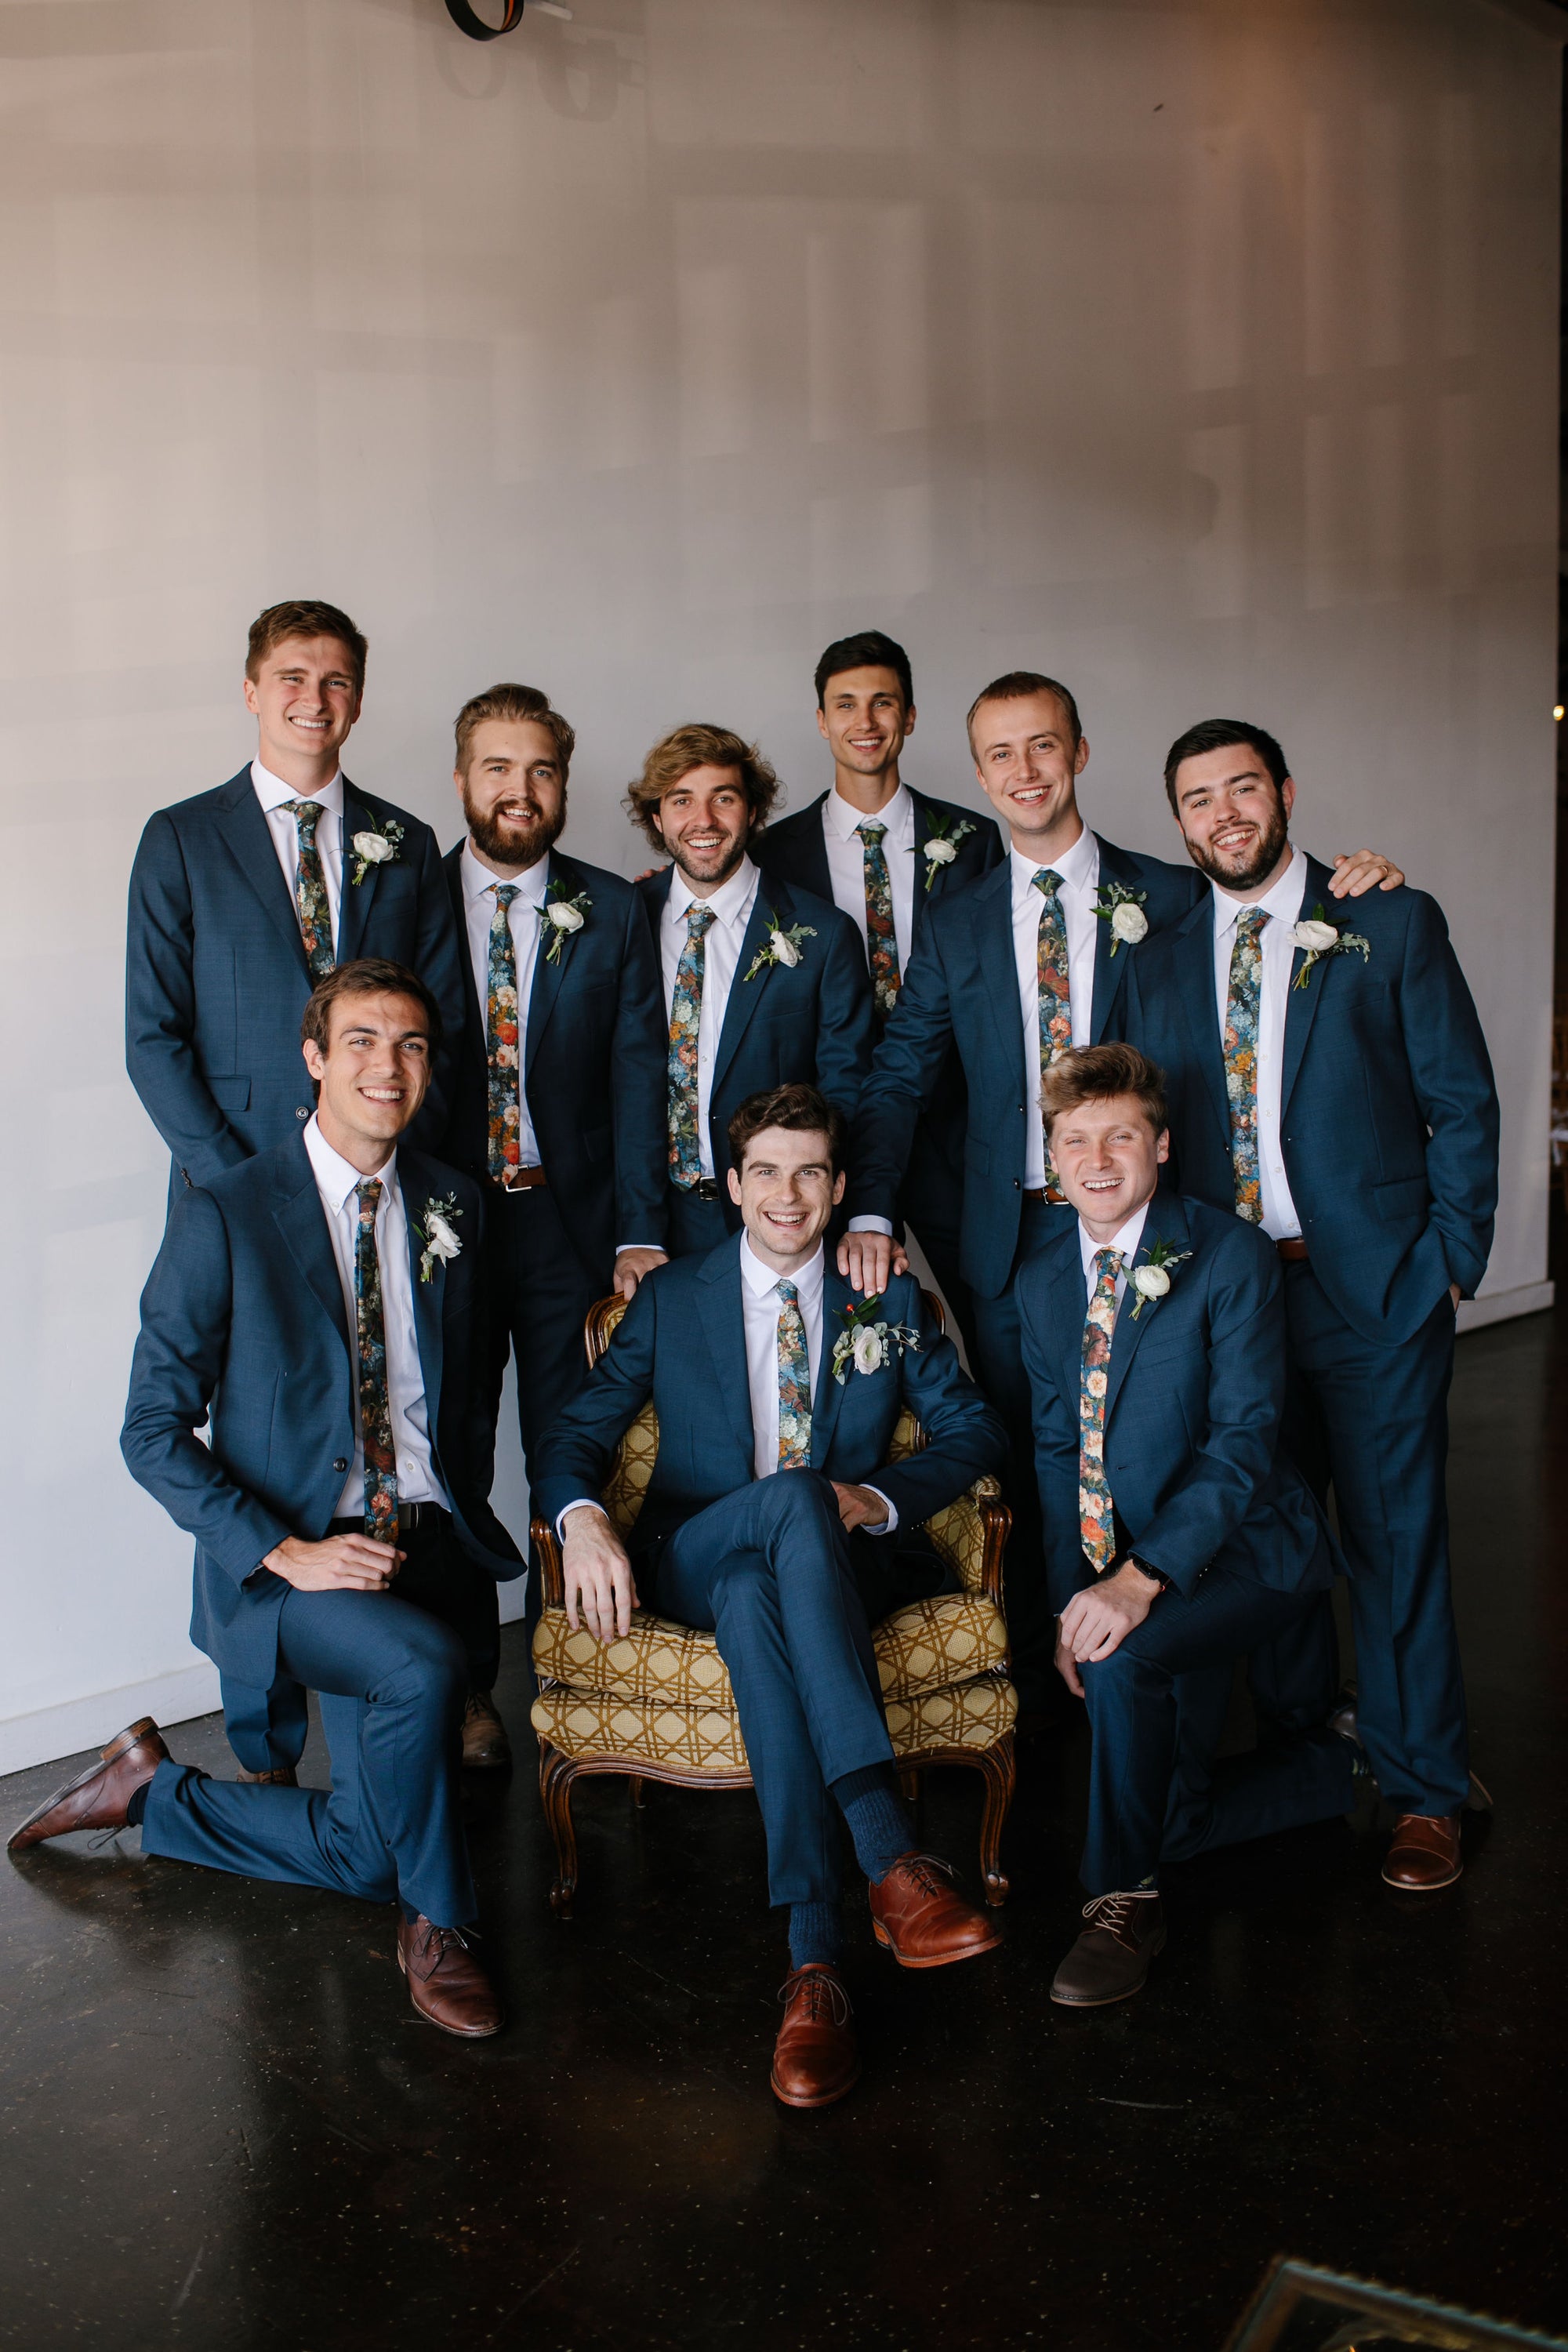 Floral ties for groom and groomsmen. Blue floral tie for weddings.